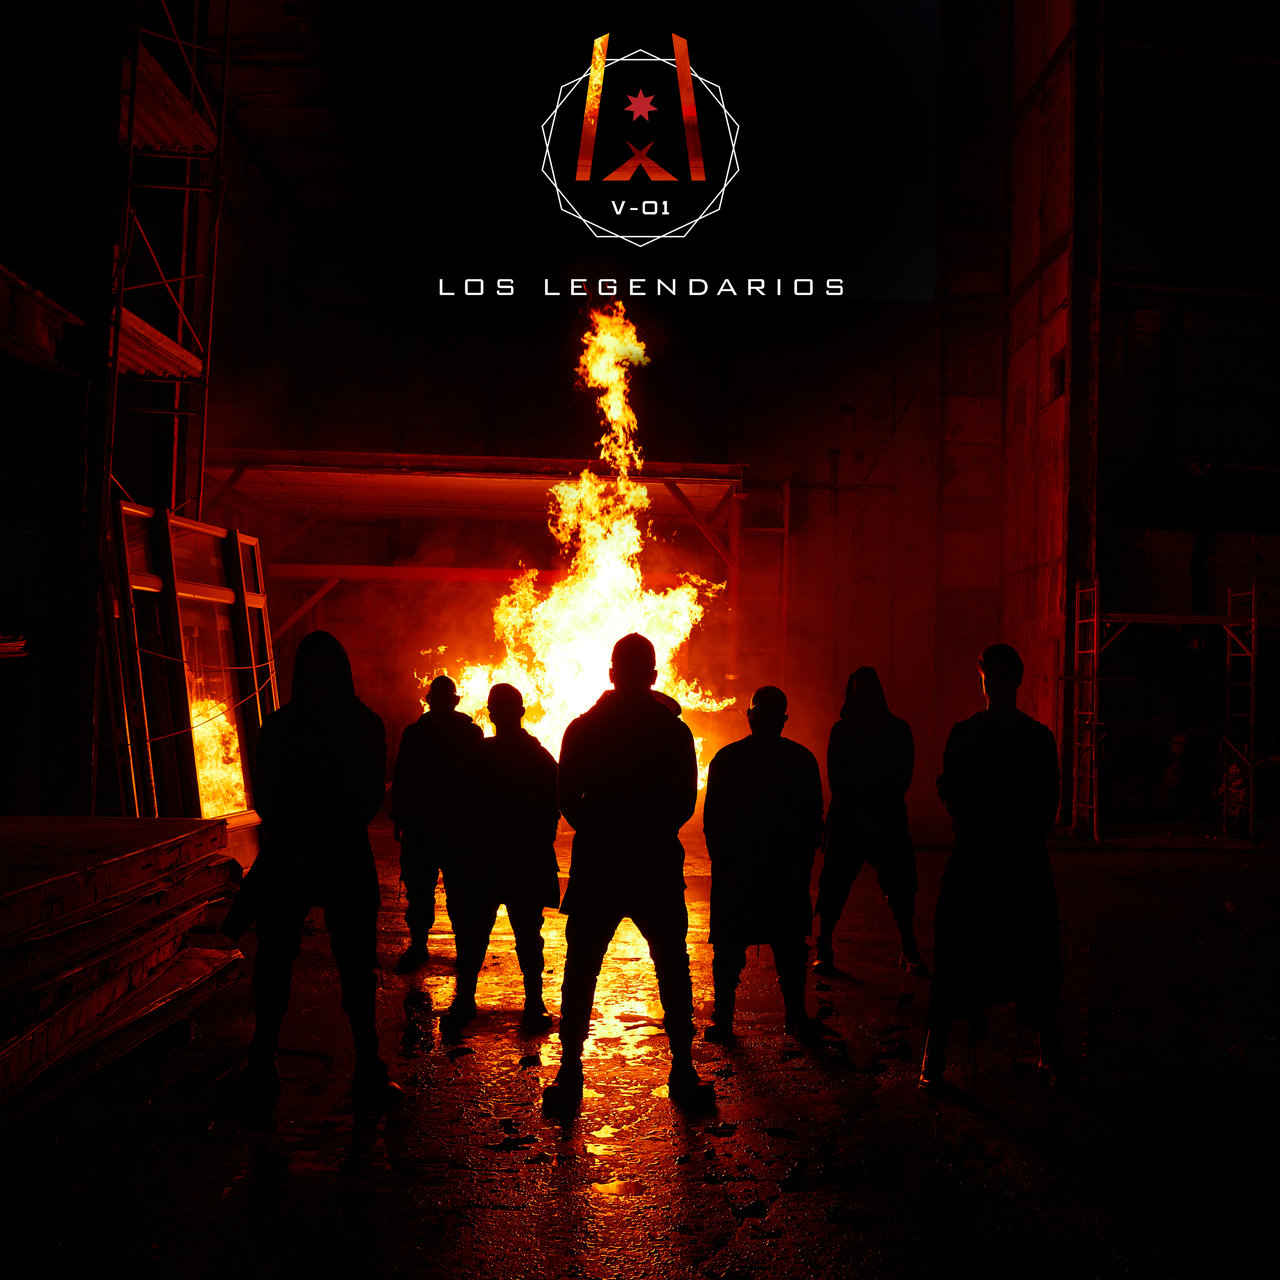 Los Legendarios, Wisin, & Jhayco — Fiel cover artwork